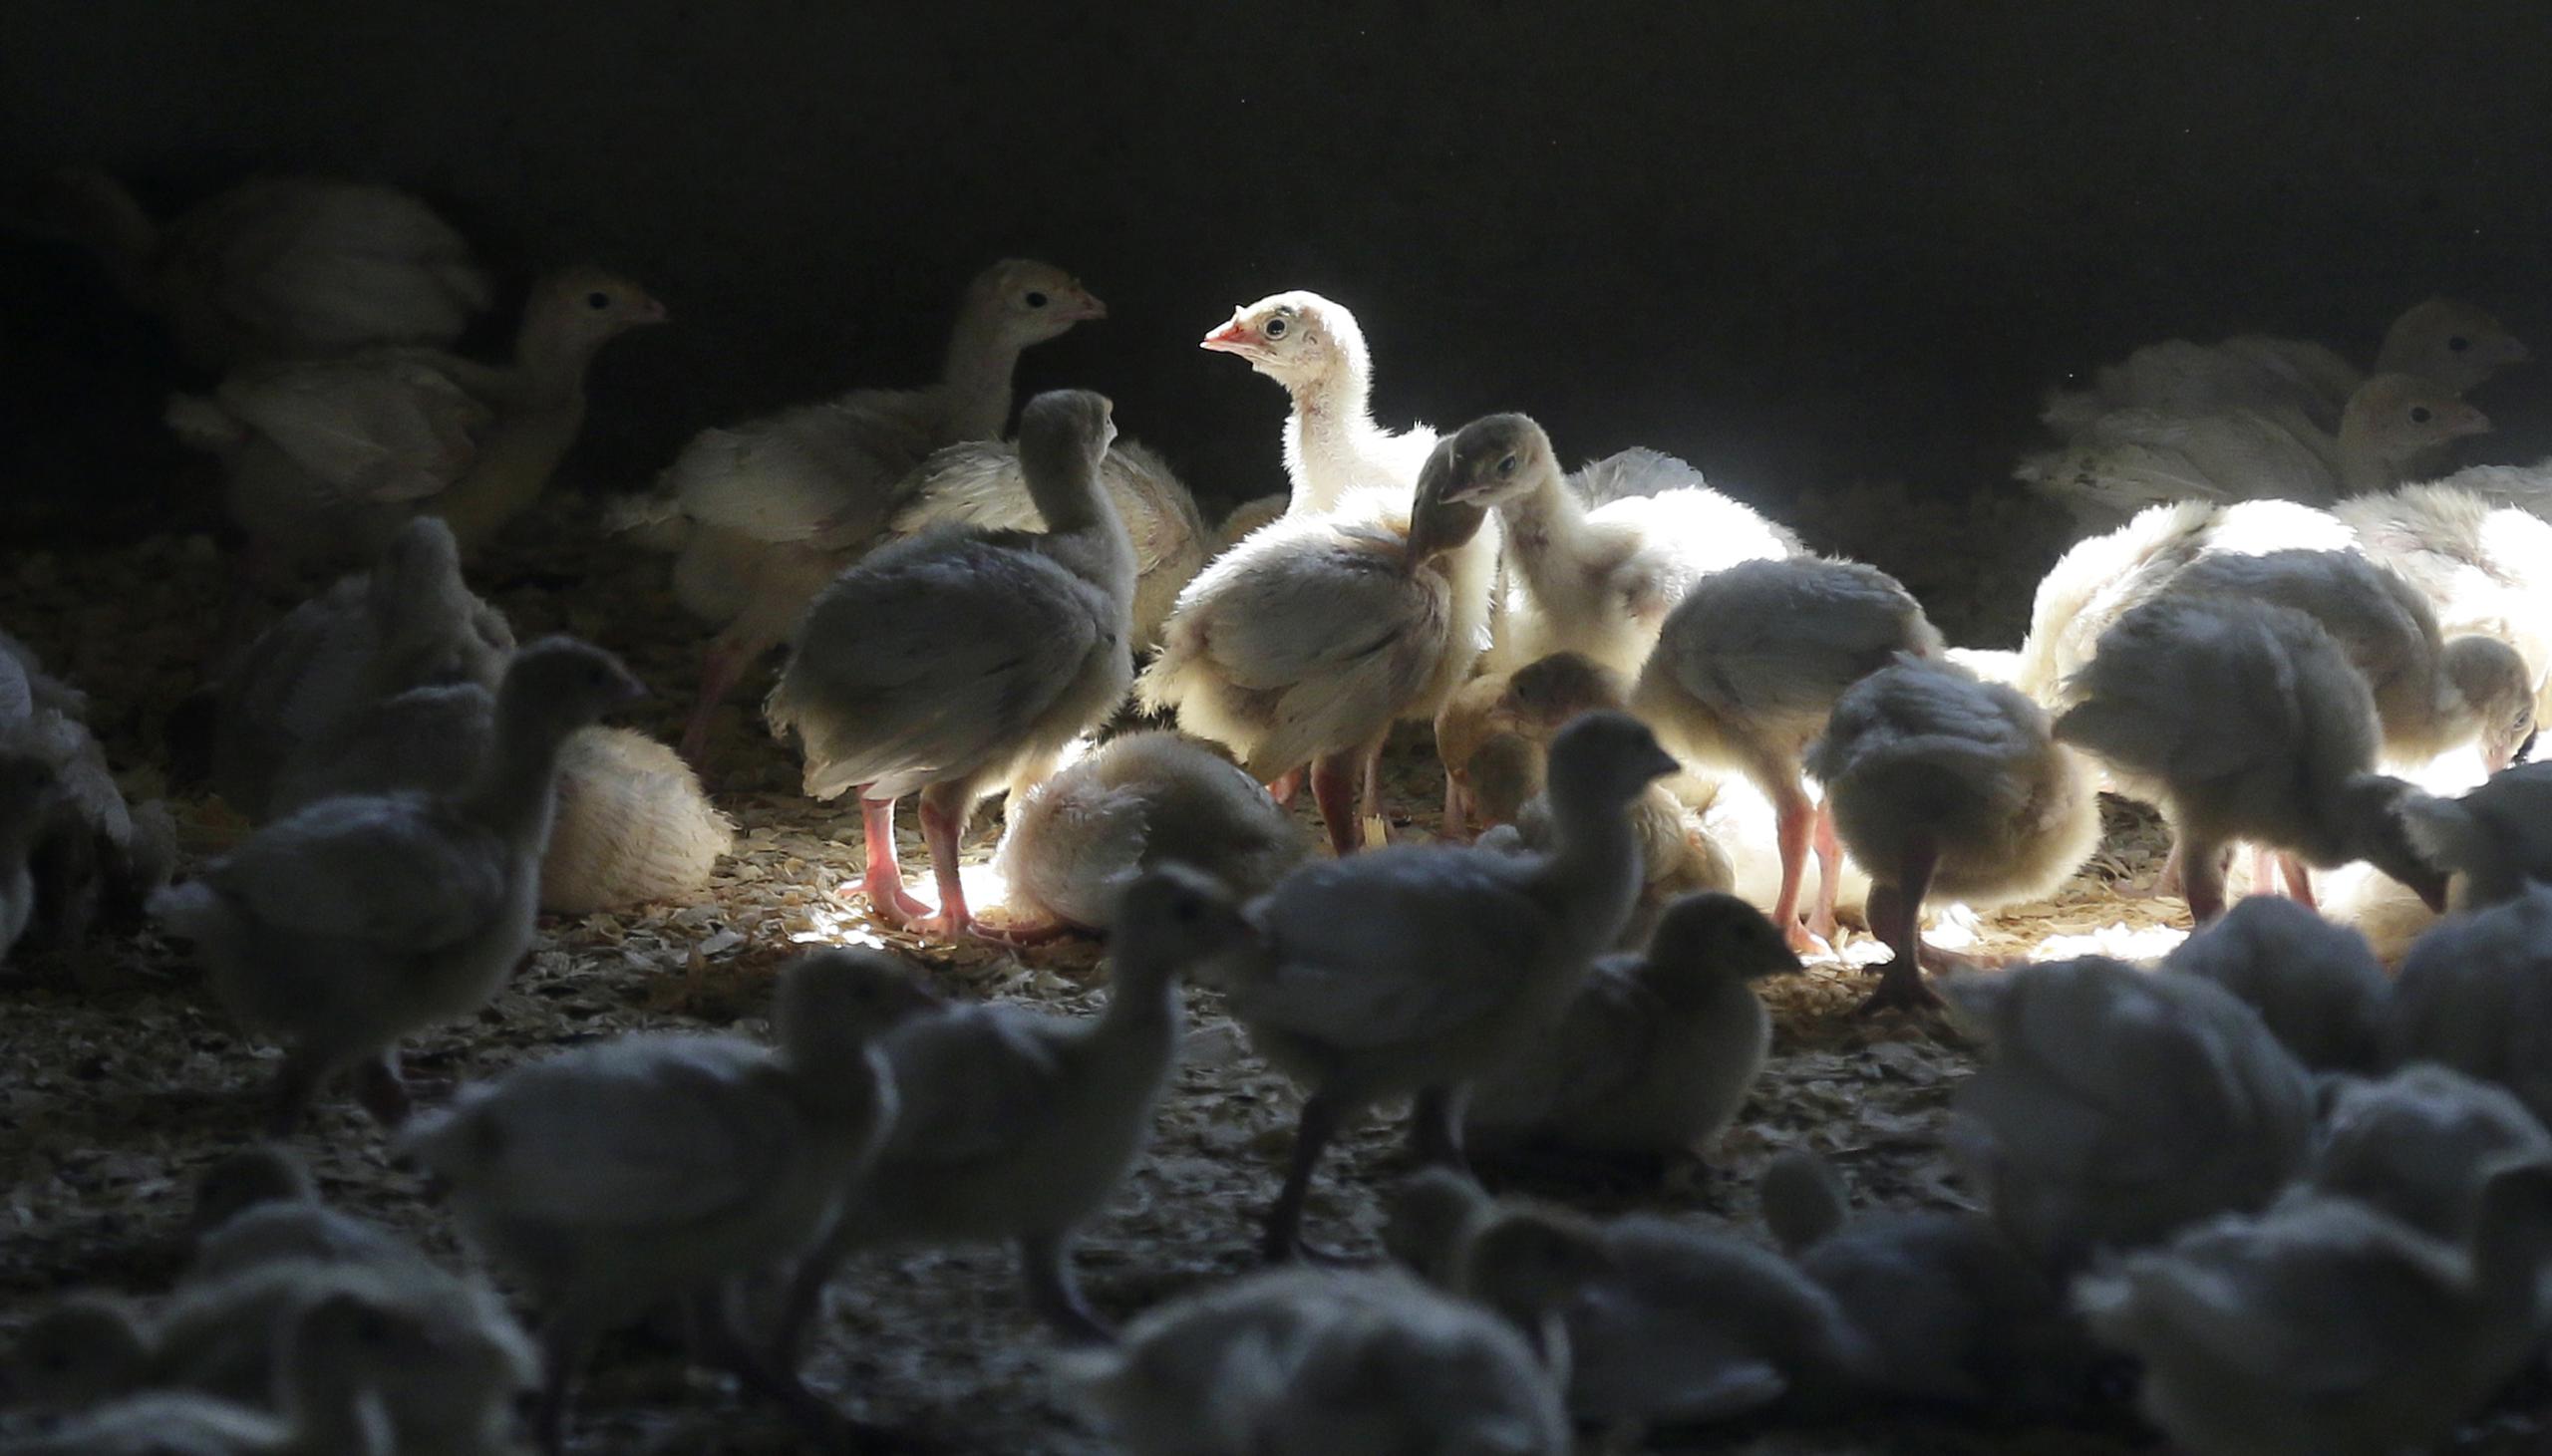 El precio de los huevos llegó a subir 61% y el de la pechuga de pavo 75% entre mayo y julio del 2015.